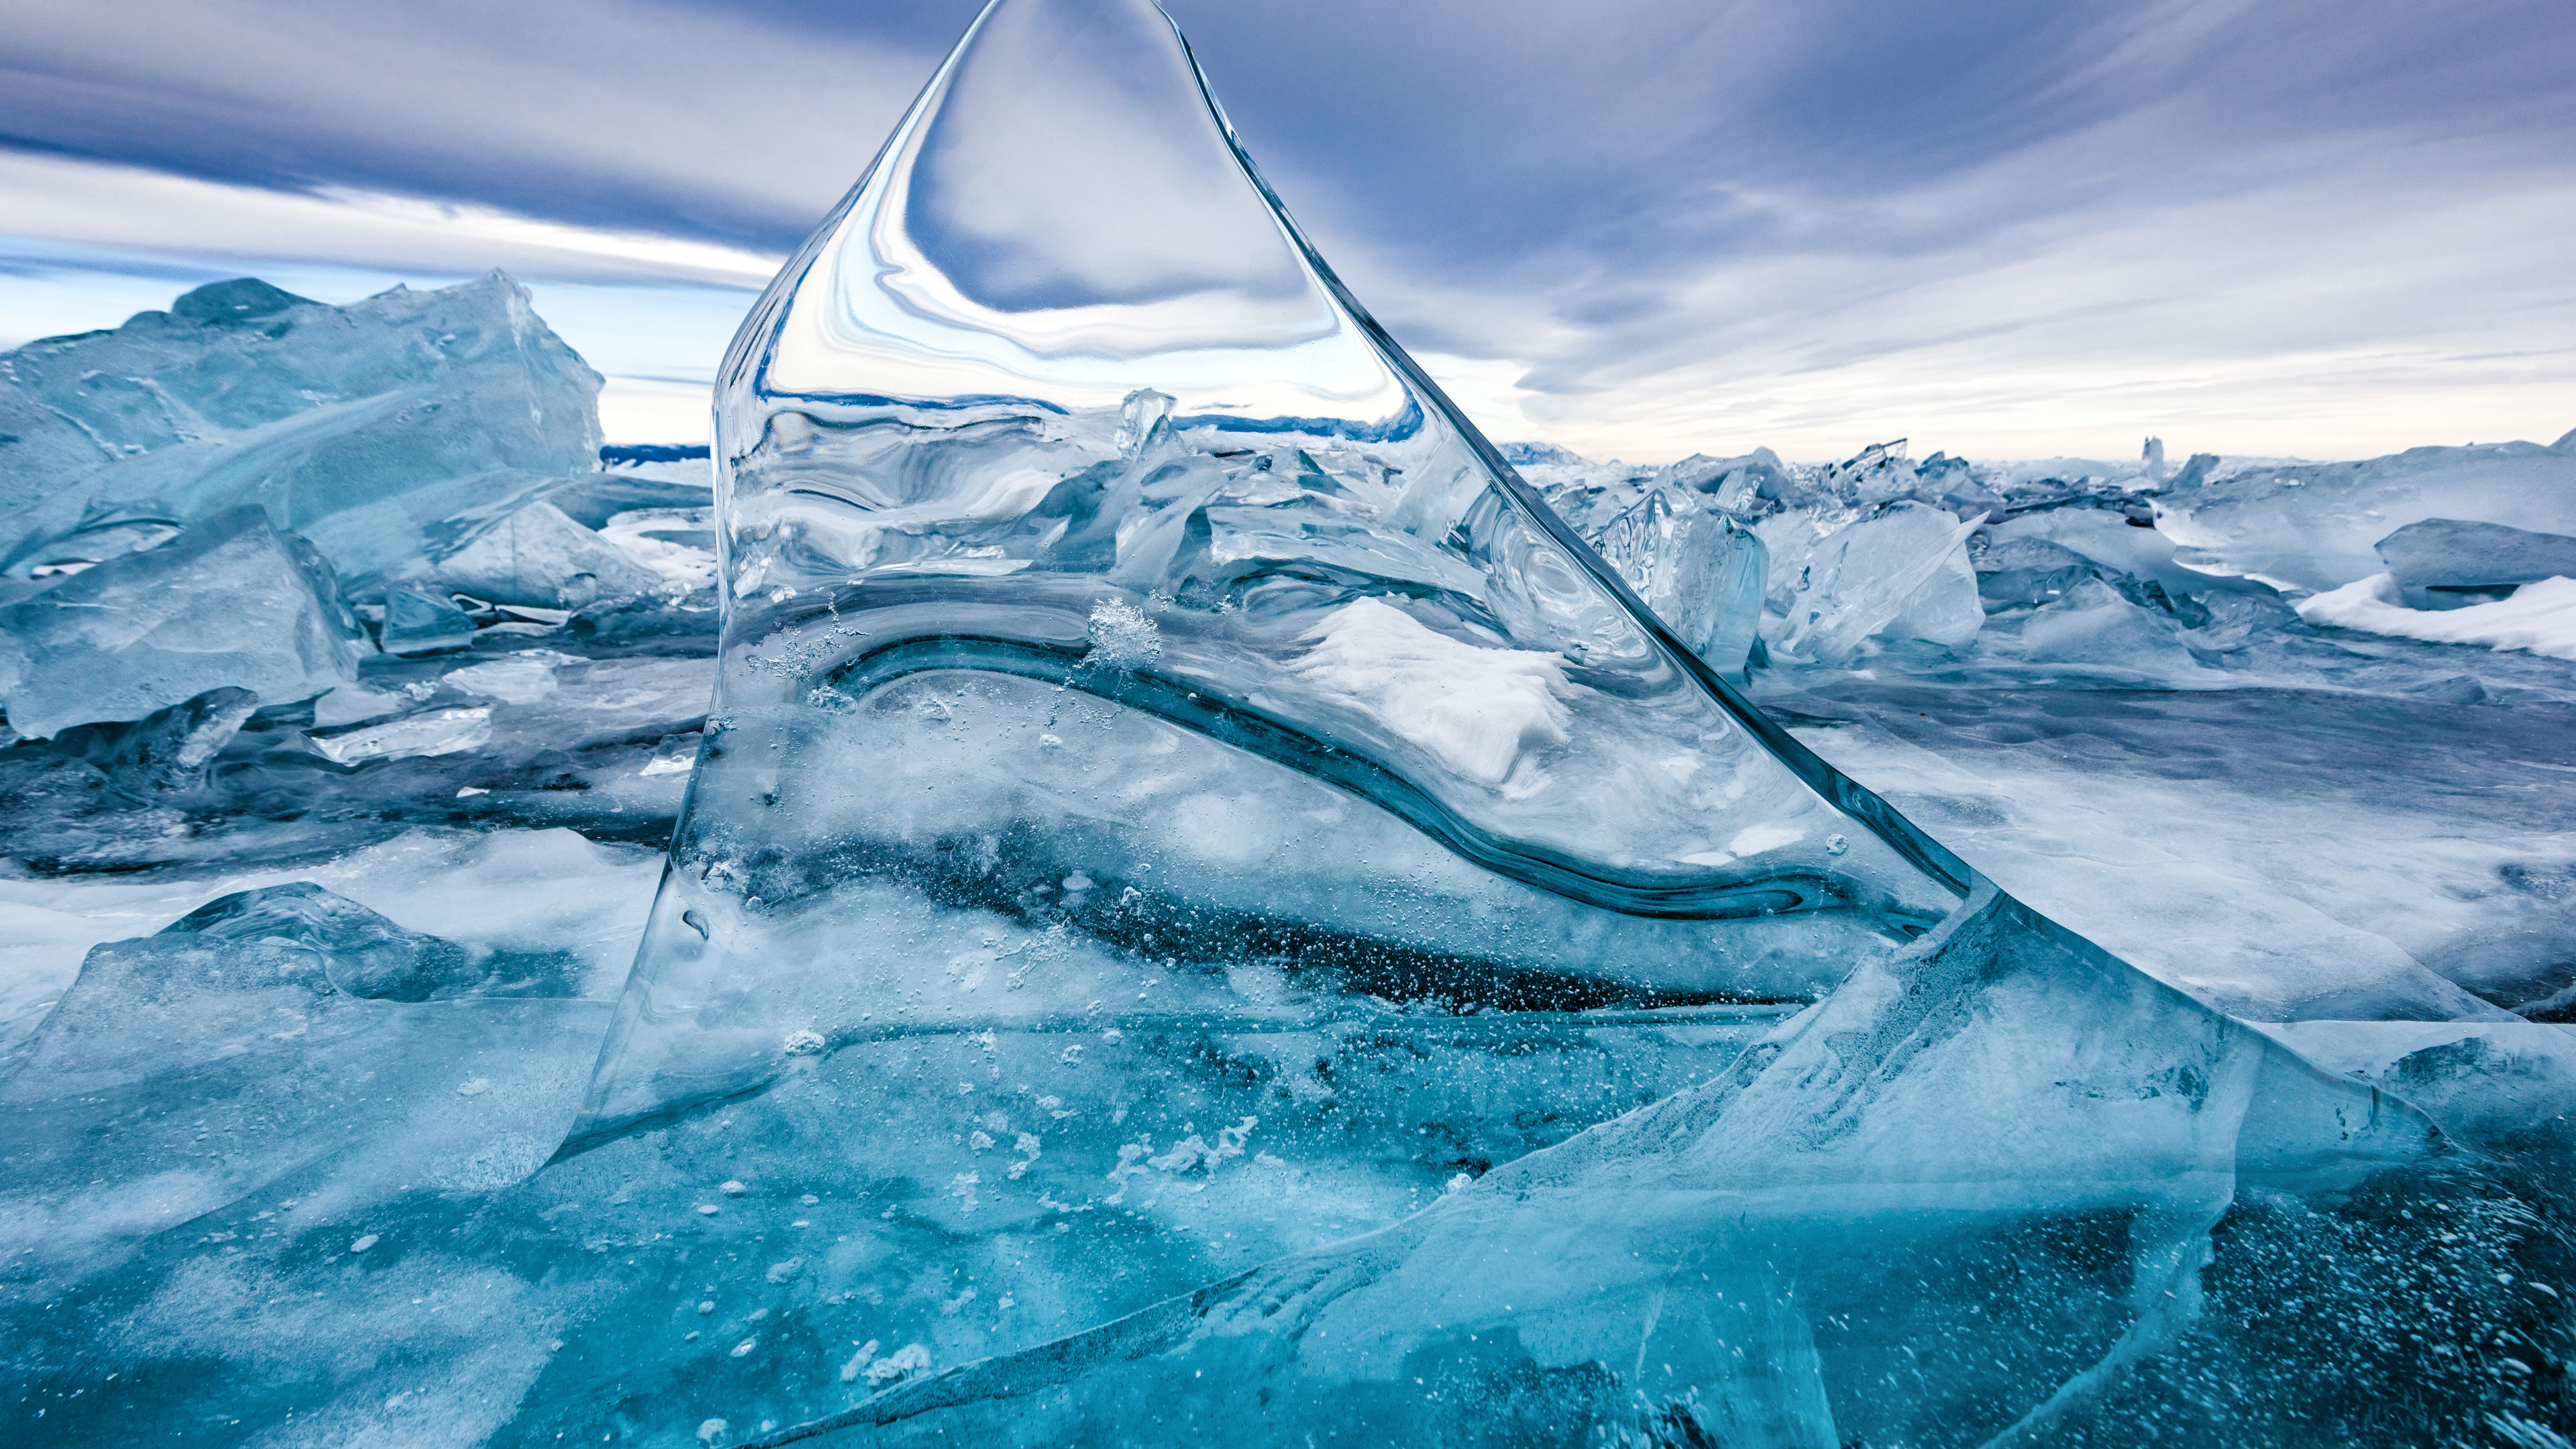 自然景观, 极地冰盖, 自然环境, 山脉, 冰川 壁纸 3840x2160 允许